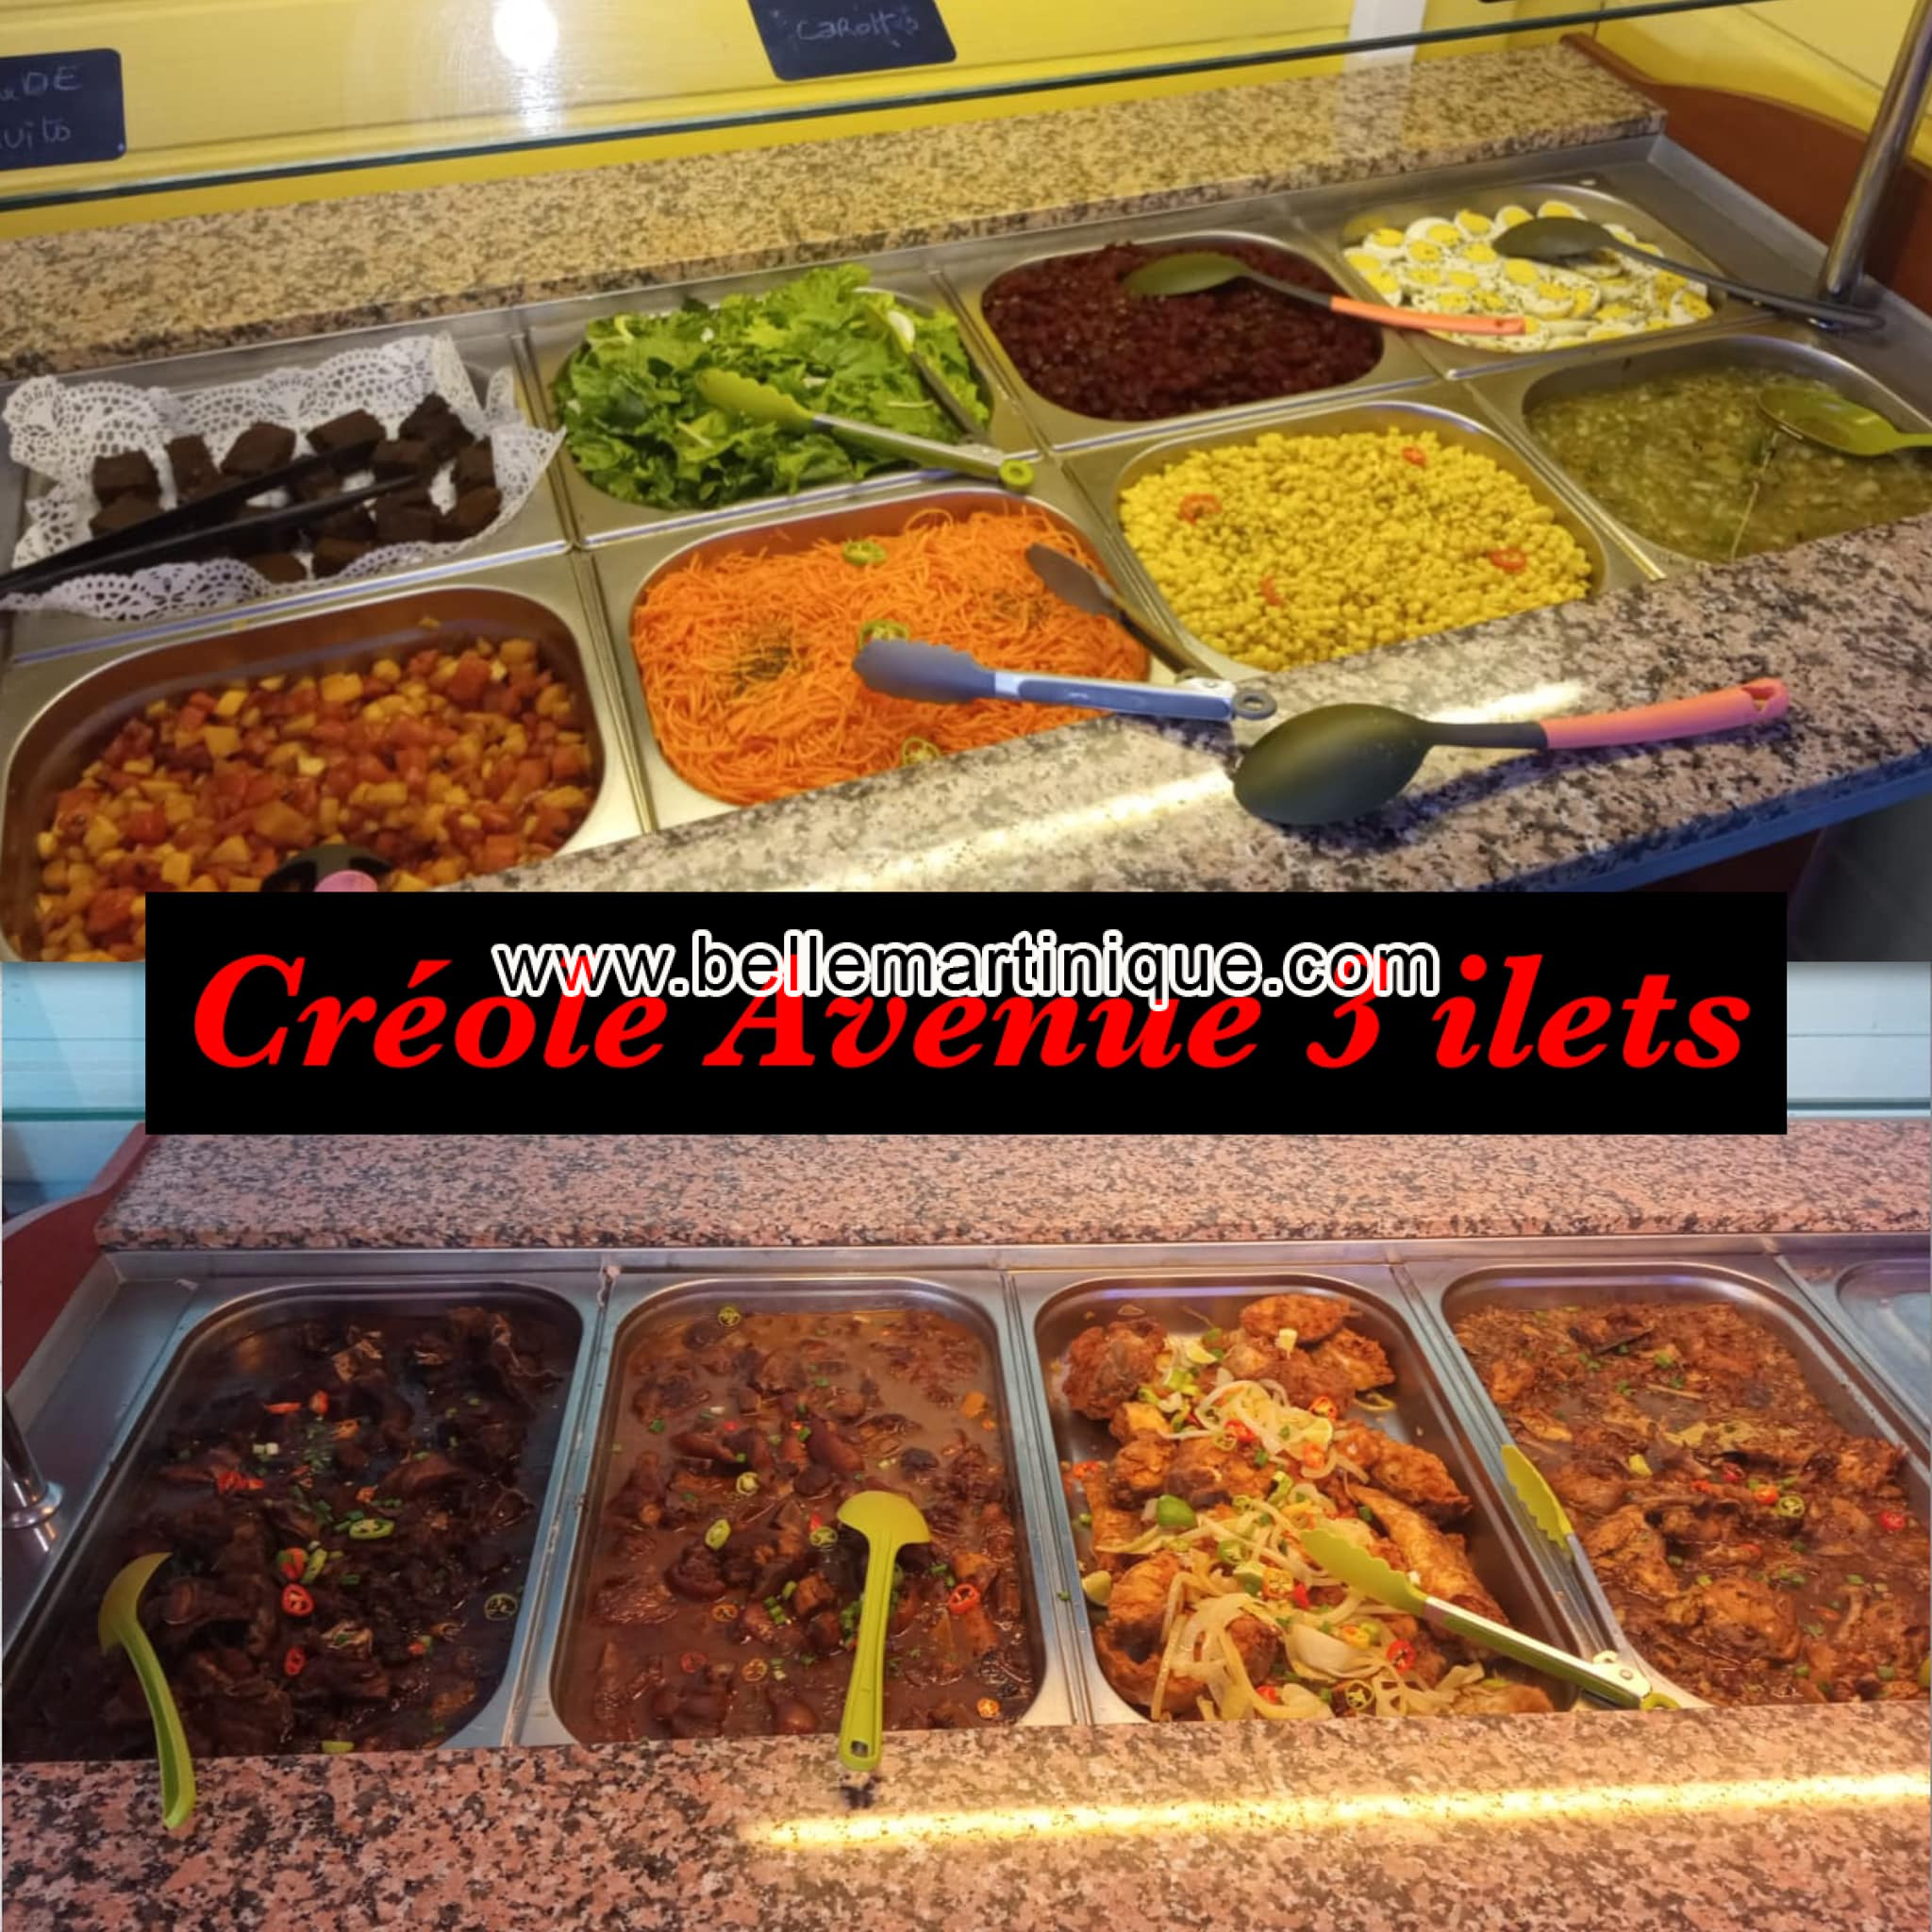 Creole Avenue - Restaurant - Les Trois Ilets - Martinique - Antilles - Caraibes